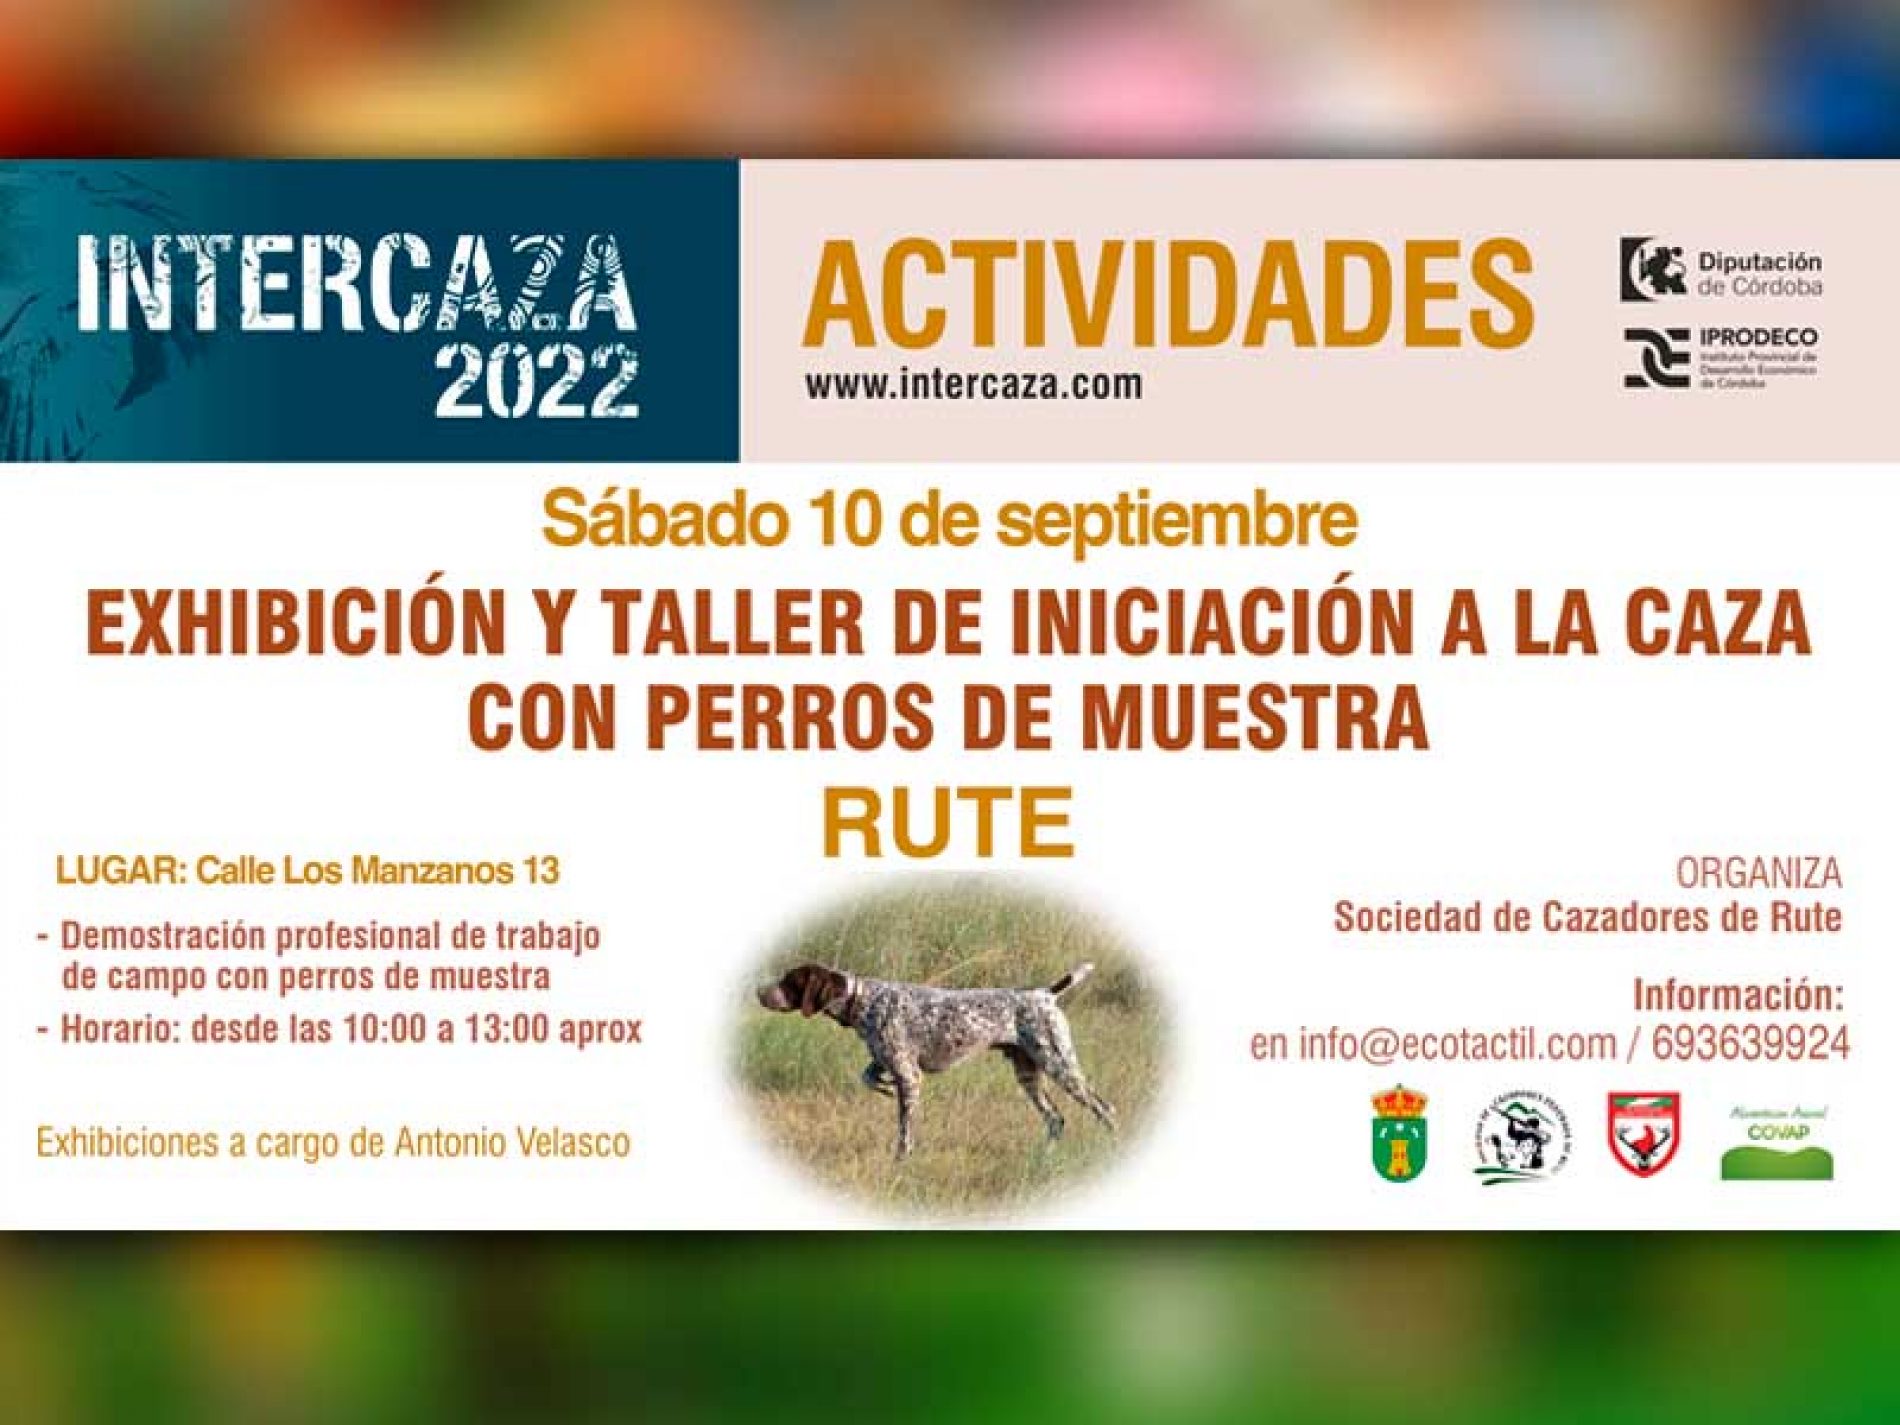 Intercaza 2022 calienta motores con un completo programa de actividades de caza y naturaleza por toda Córdoba